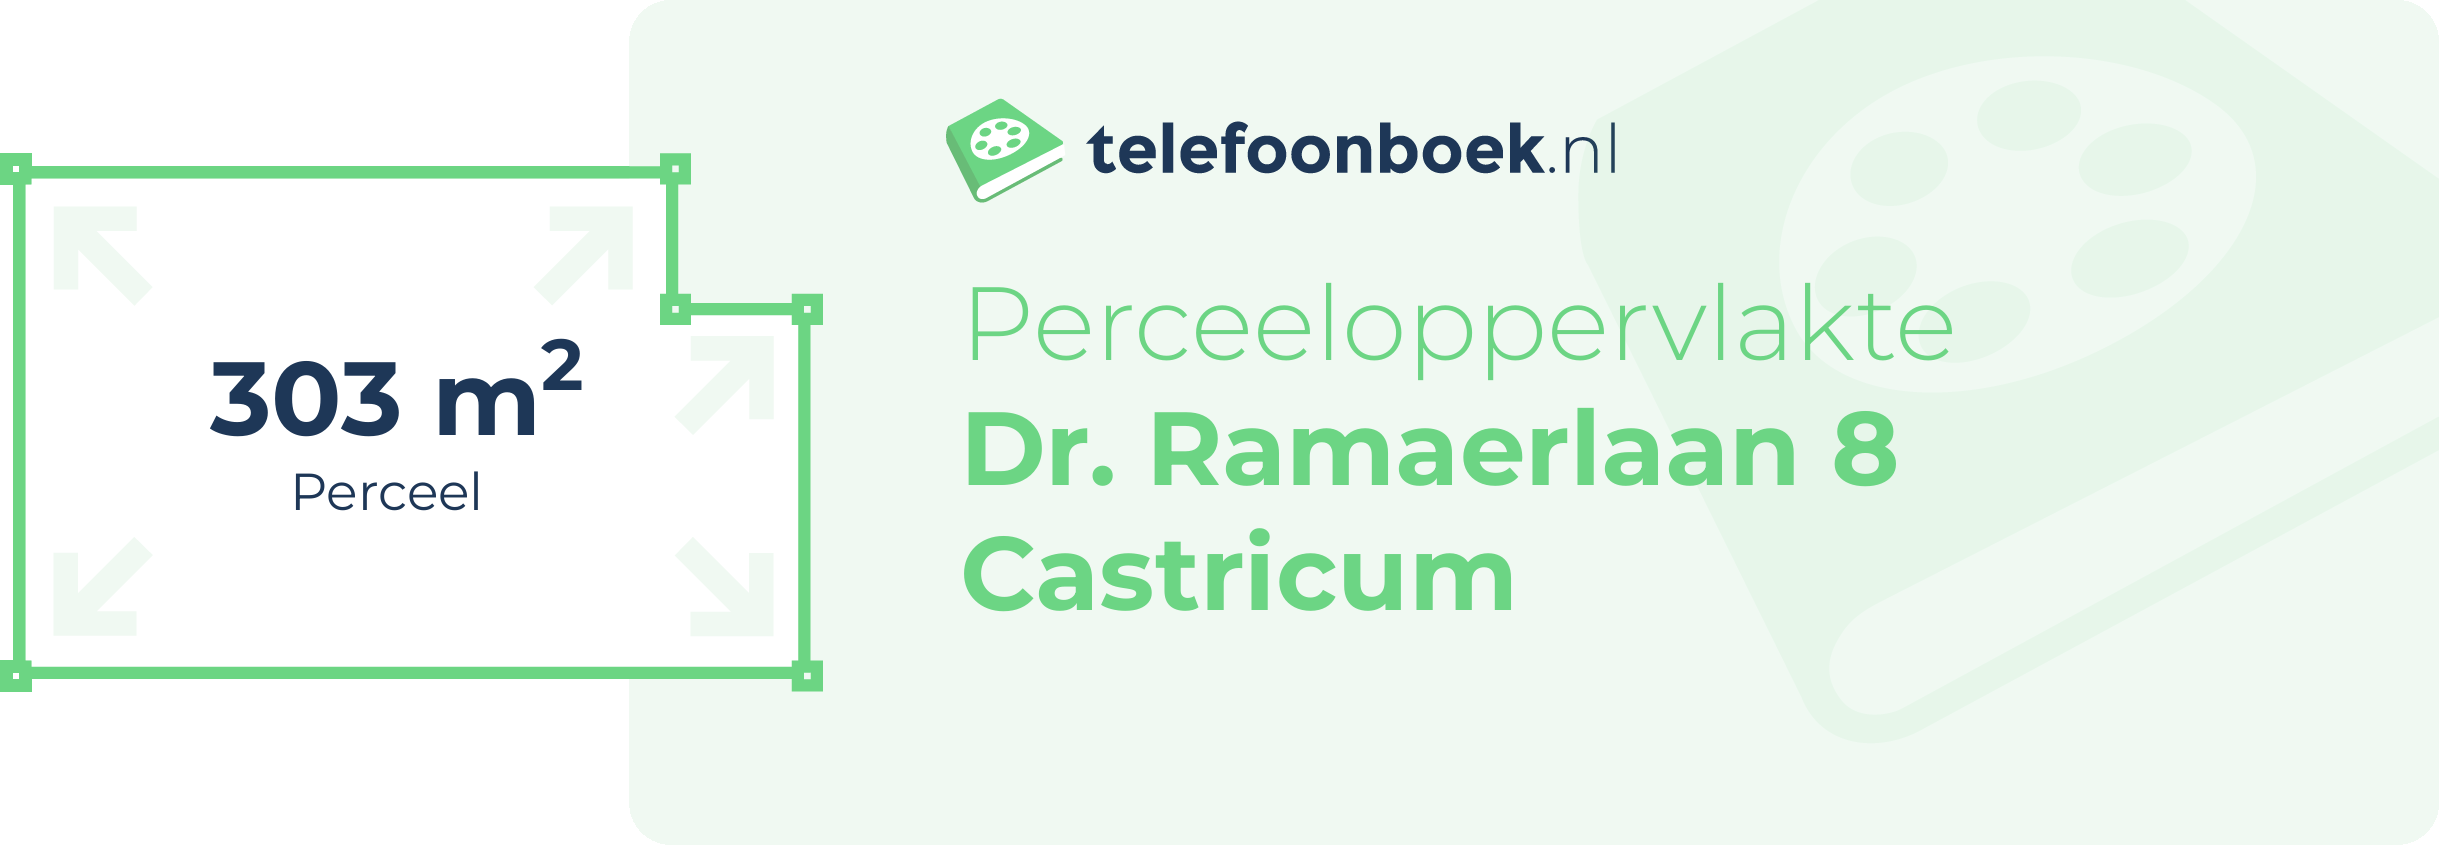 Perceeloppervlakte Dr. Ramaerlaan 8 Castricum